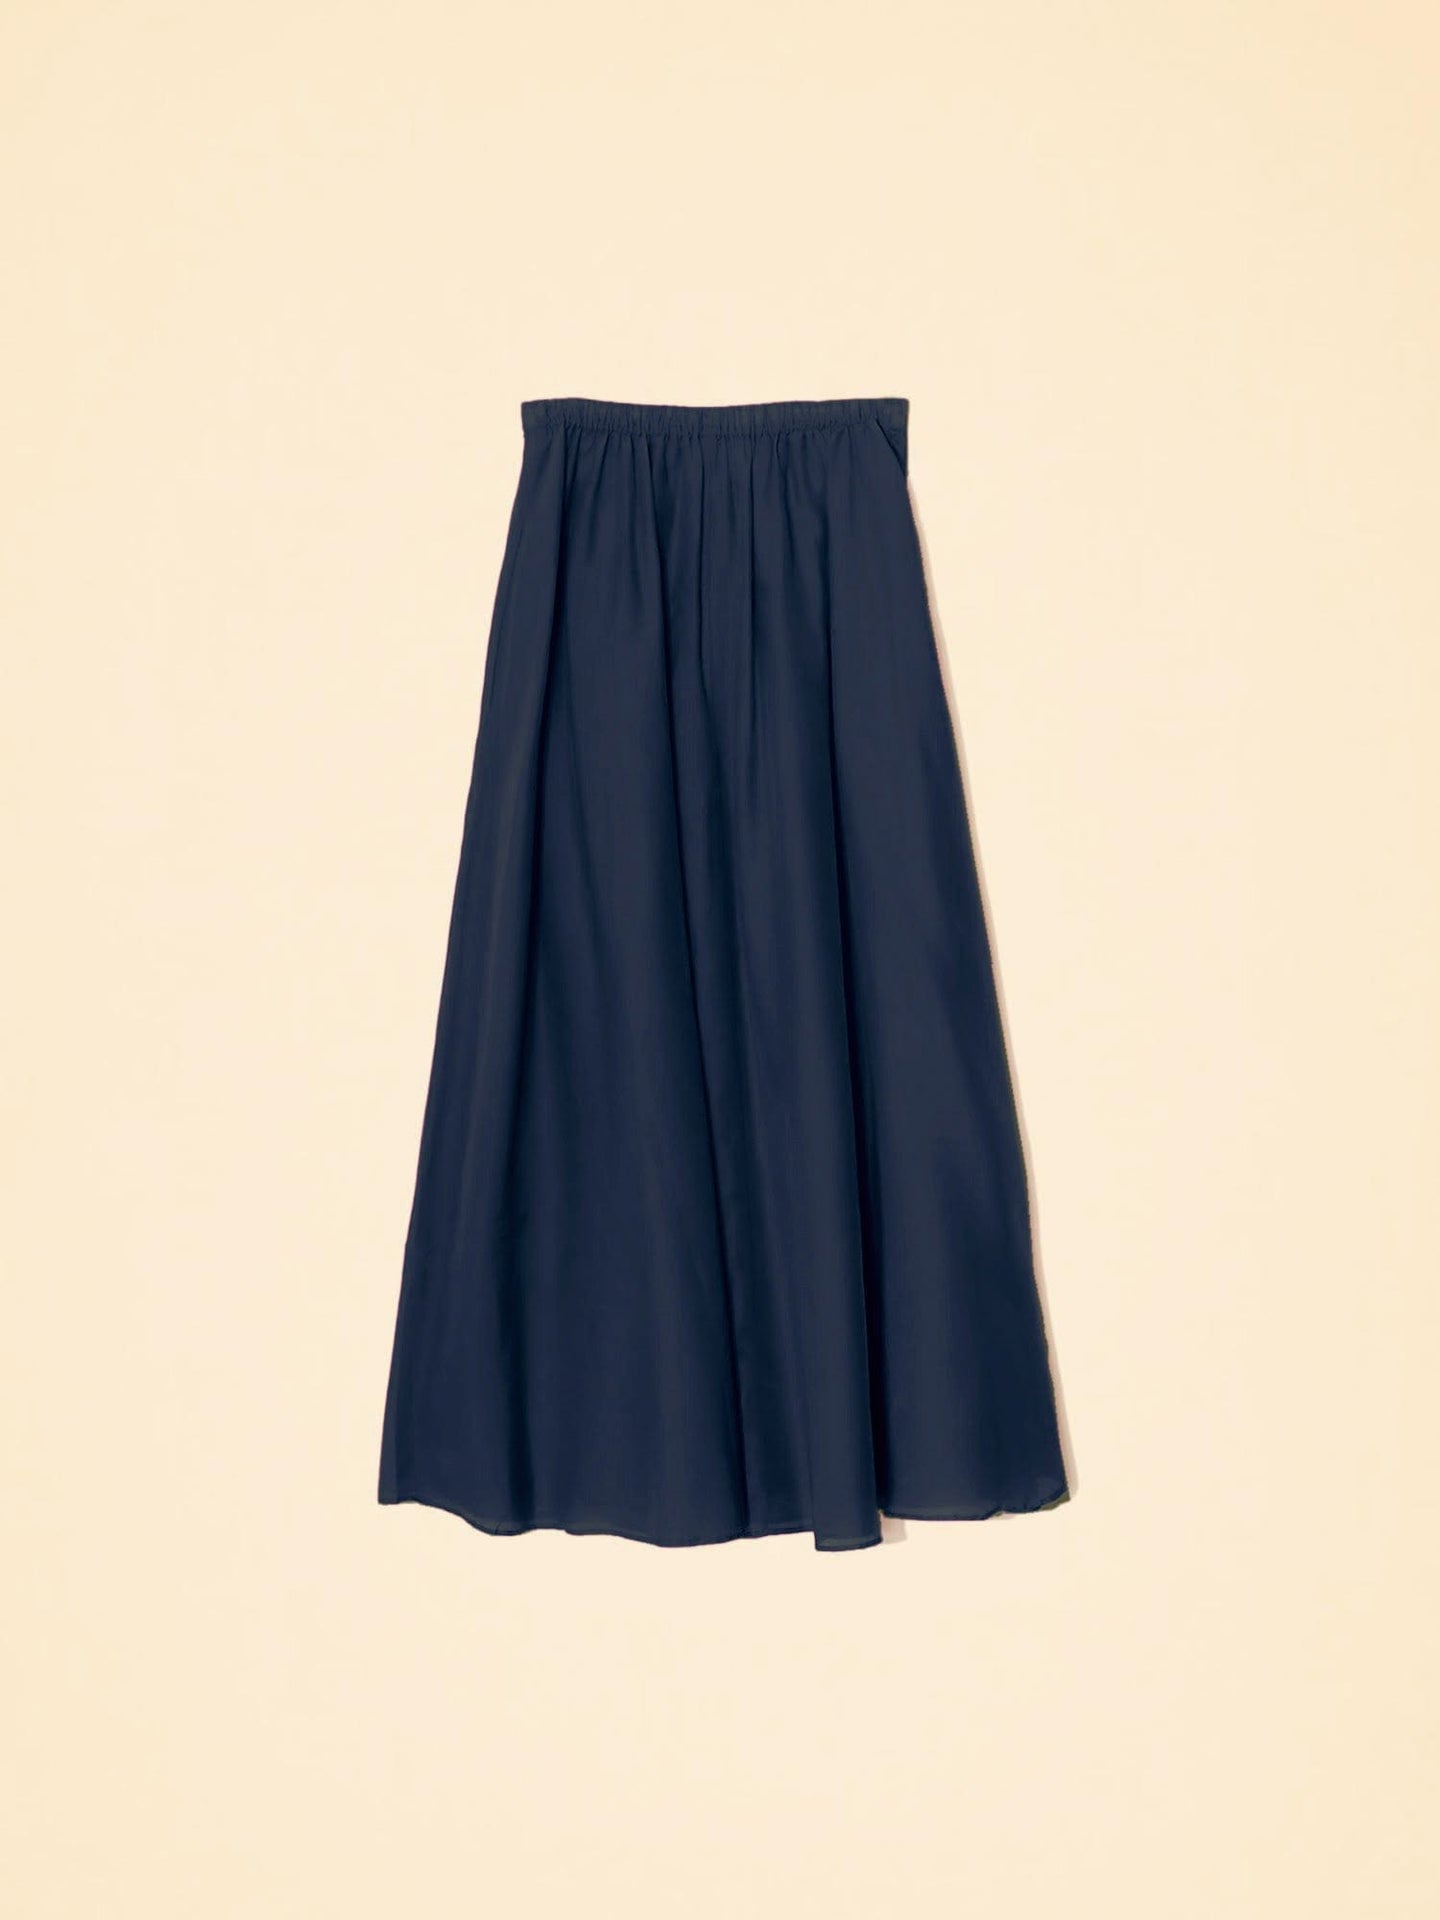 Xirena Skirt Blue Sapphire Gable Skirt